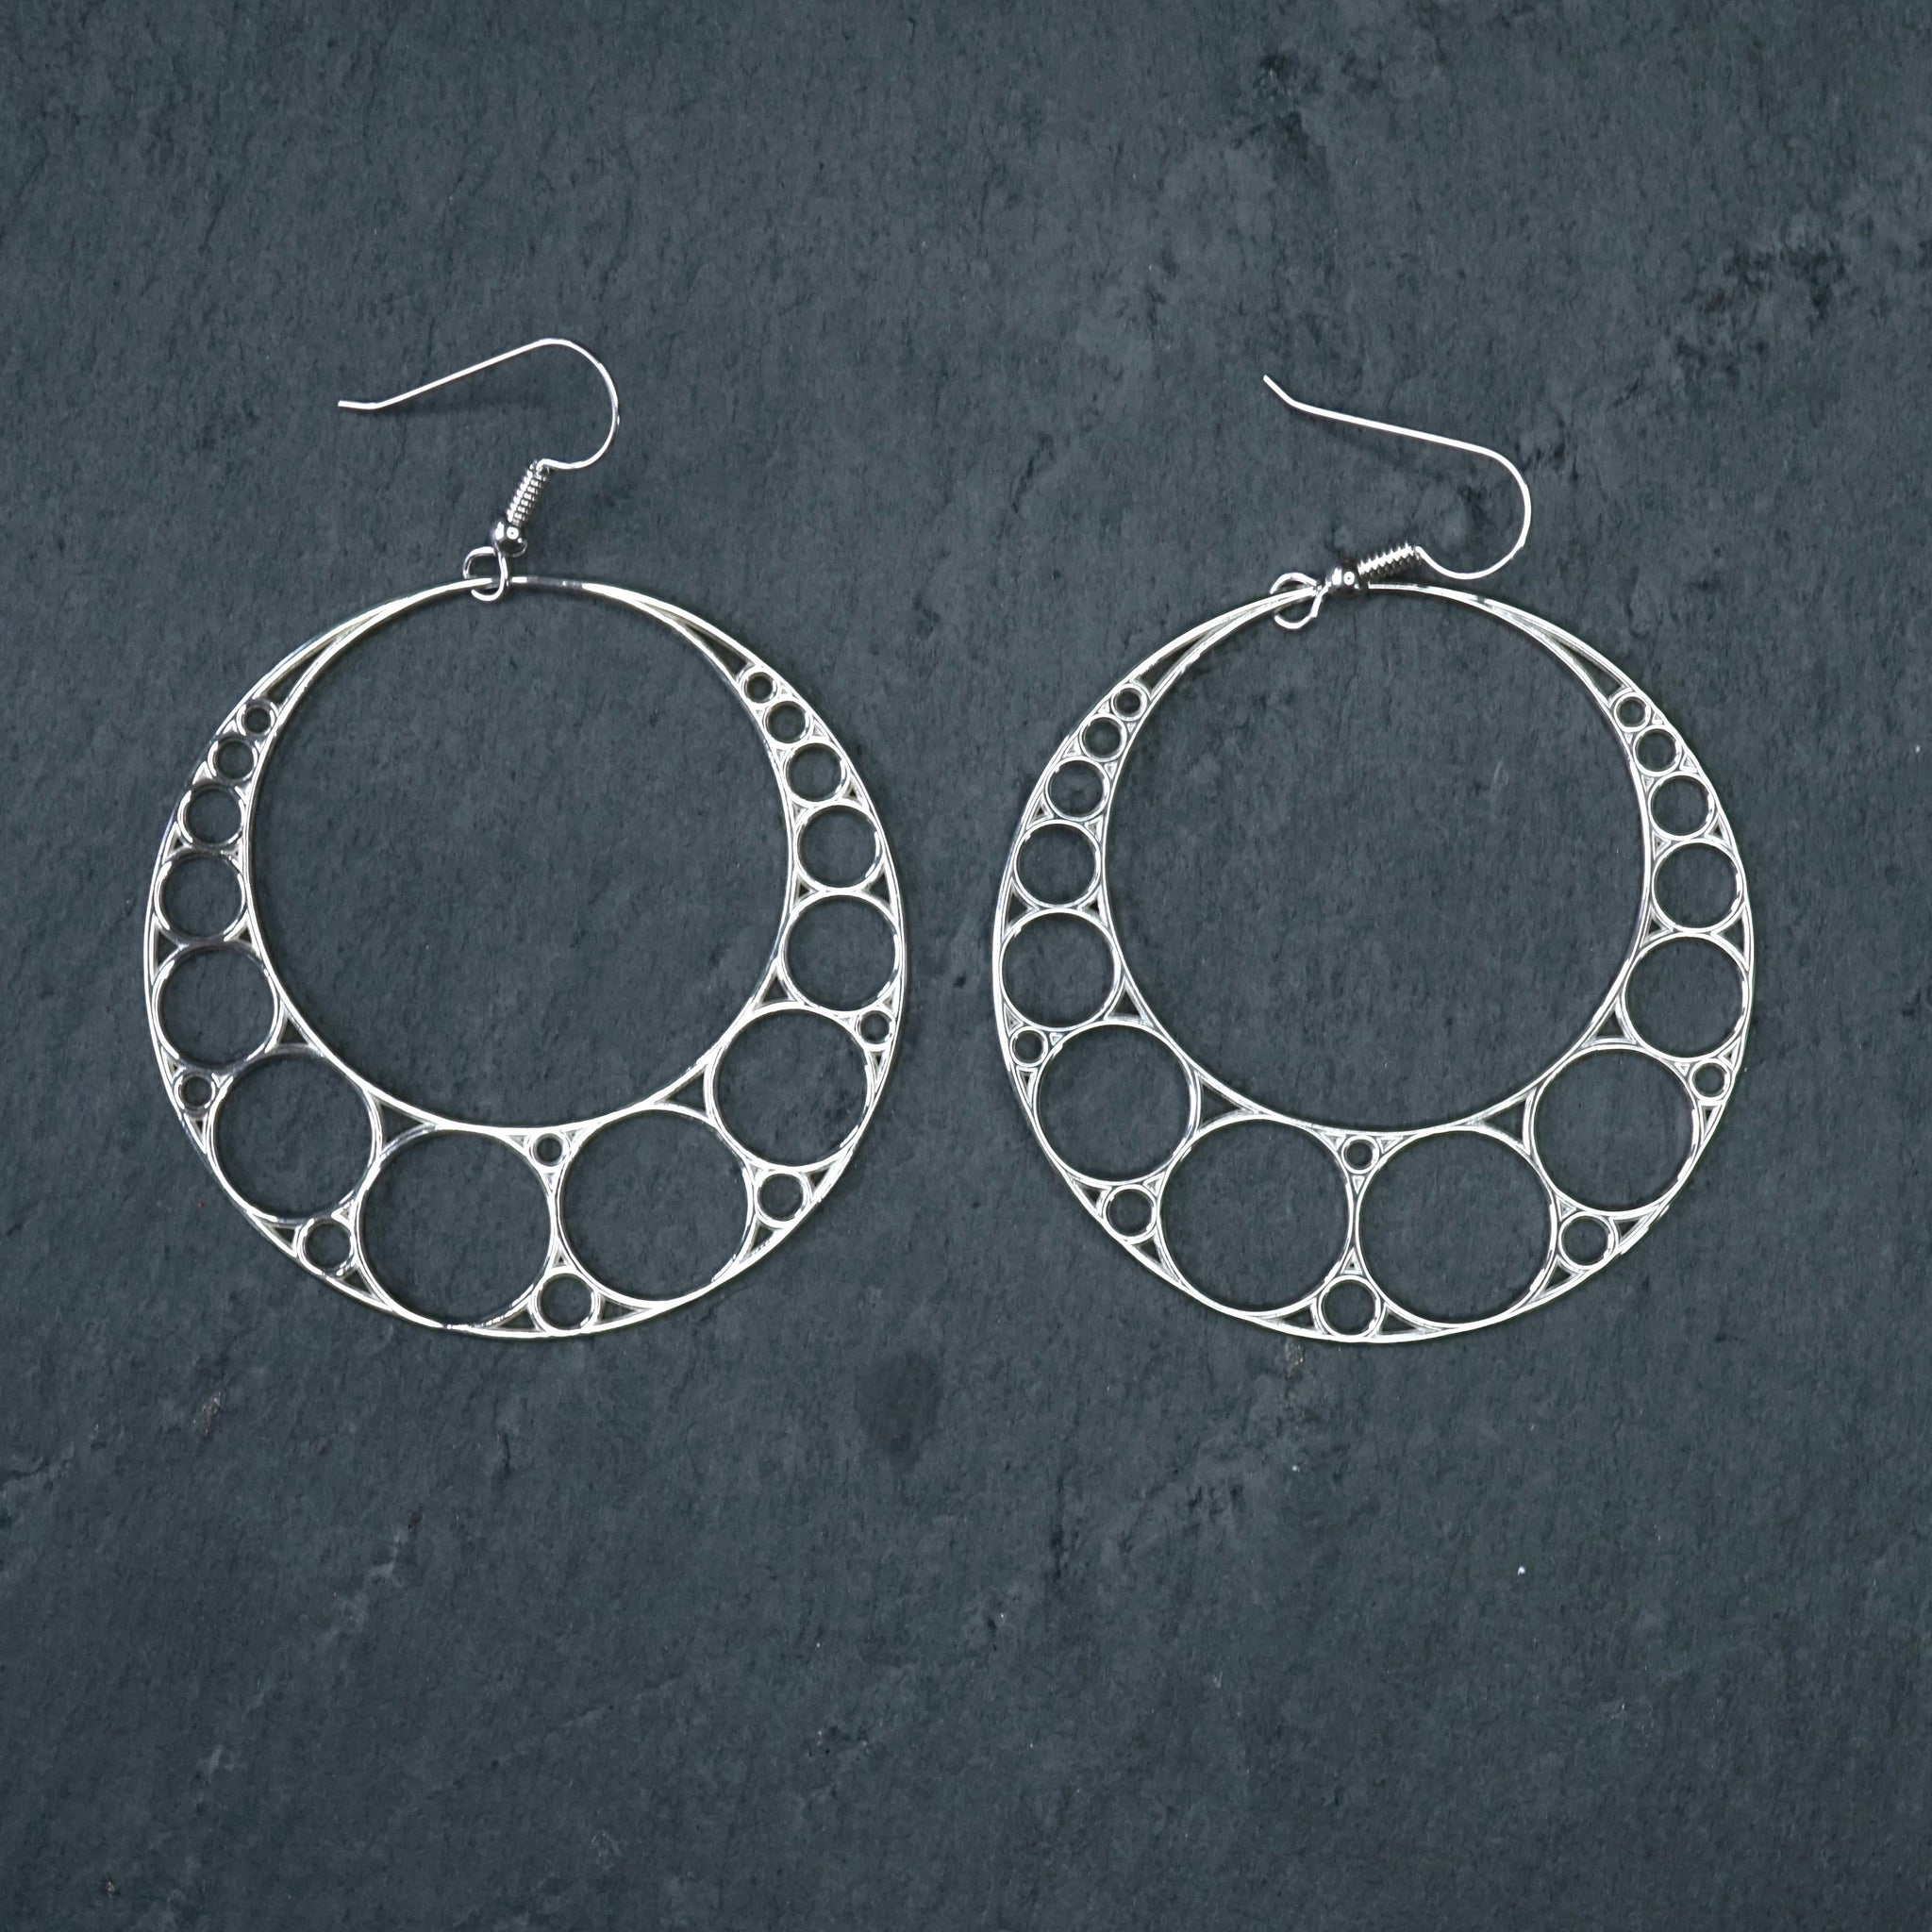 Statement Drop Earrings for Women Metal Geometric Raised Design Dangle  Earrings | eBay